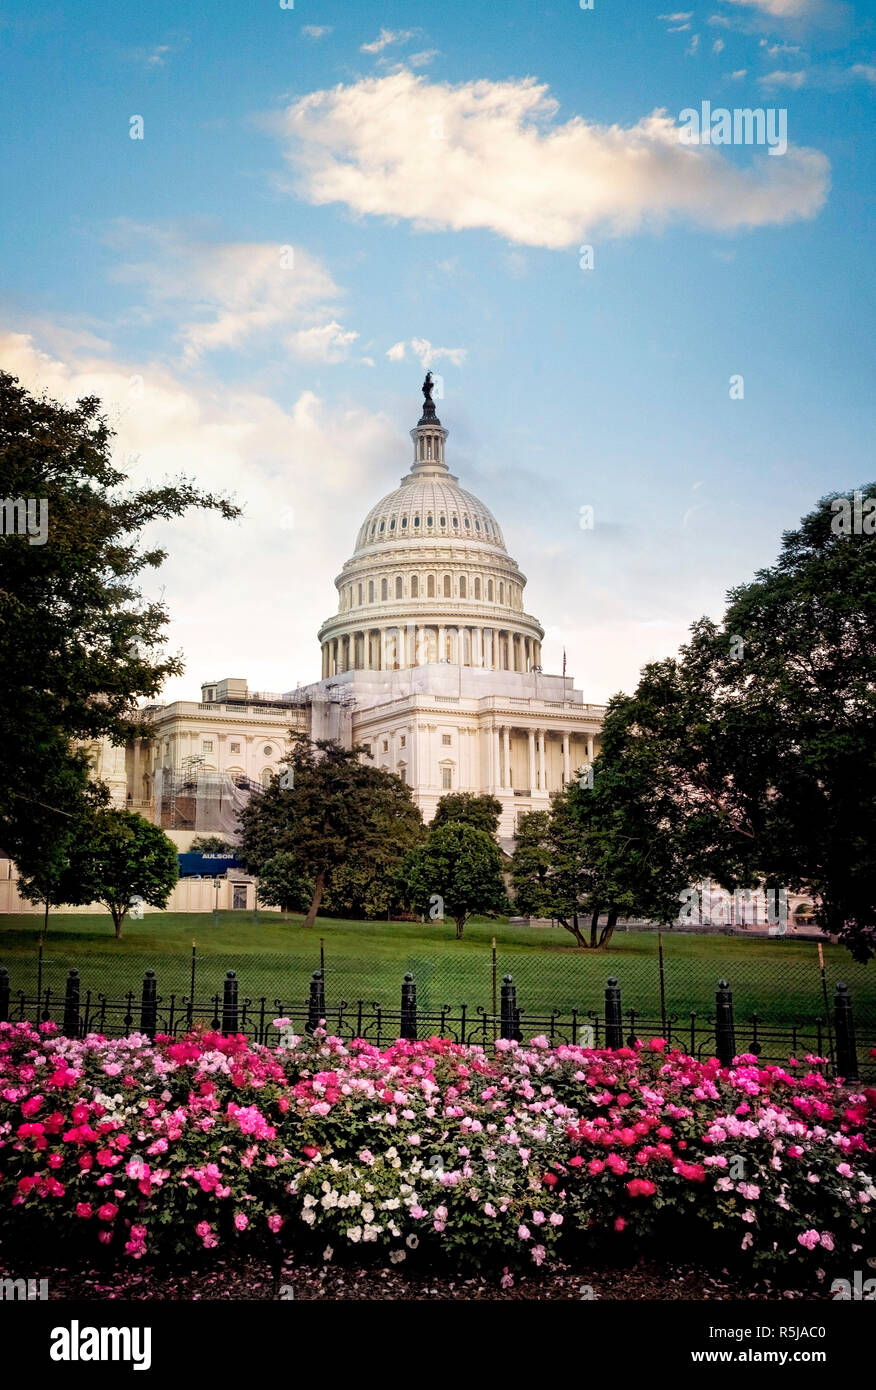 Le bâtiment du Capitole, qui abrite le Sénat et la Chambre des représentants des États-Unis sur le National Mall, Washington DC. Banque D'Images